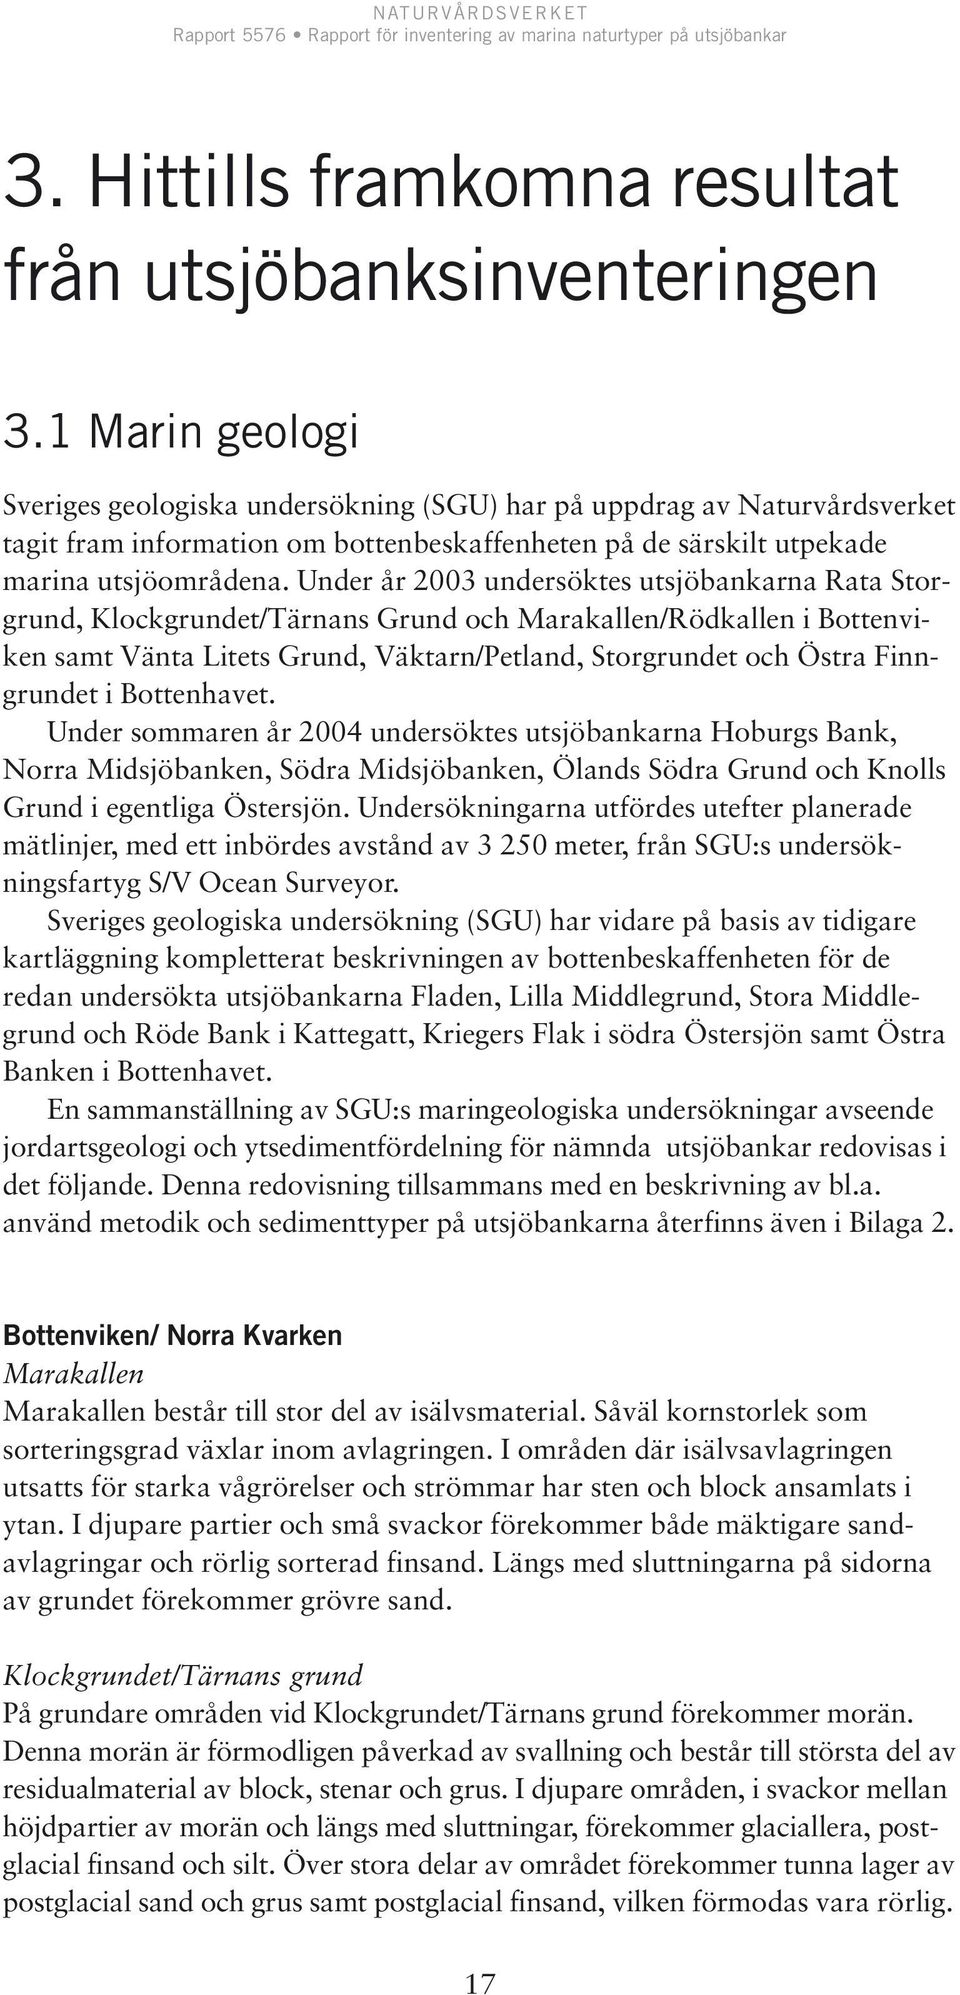 Under år 2003 undersöktes utsjöbankarna Rata Storgrund, Klockgrundet/Tärnans Grund och Marakallen/Rödkallen i Bottenviken samt Vänta Litets Grund, Väktarn/Petland, Storgrundet och Östra Finngrundet i